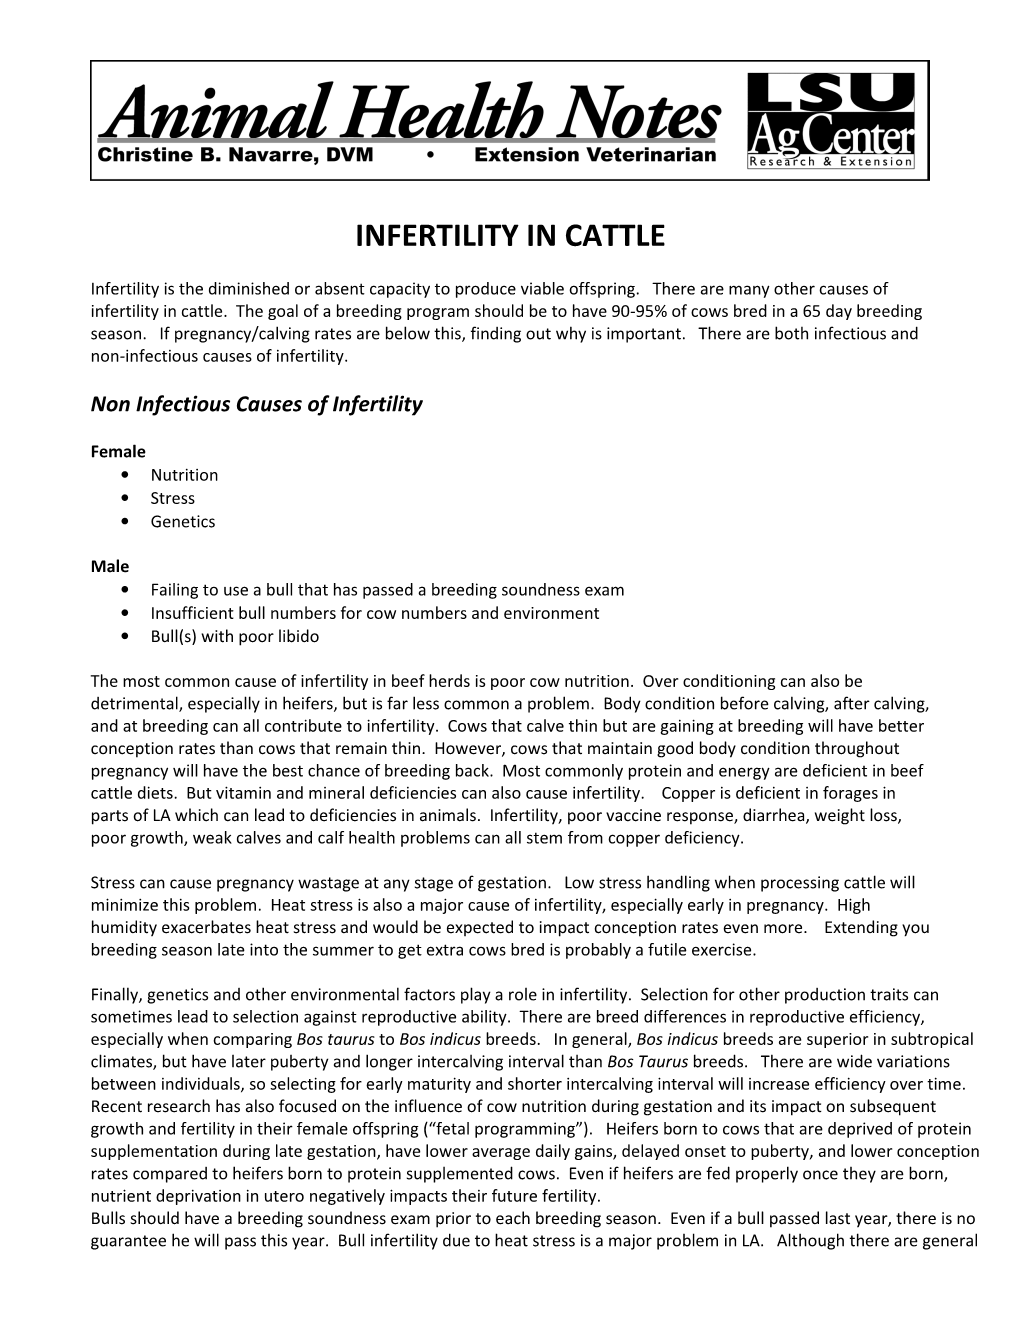 Infertility in Cattle